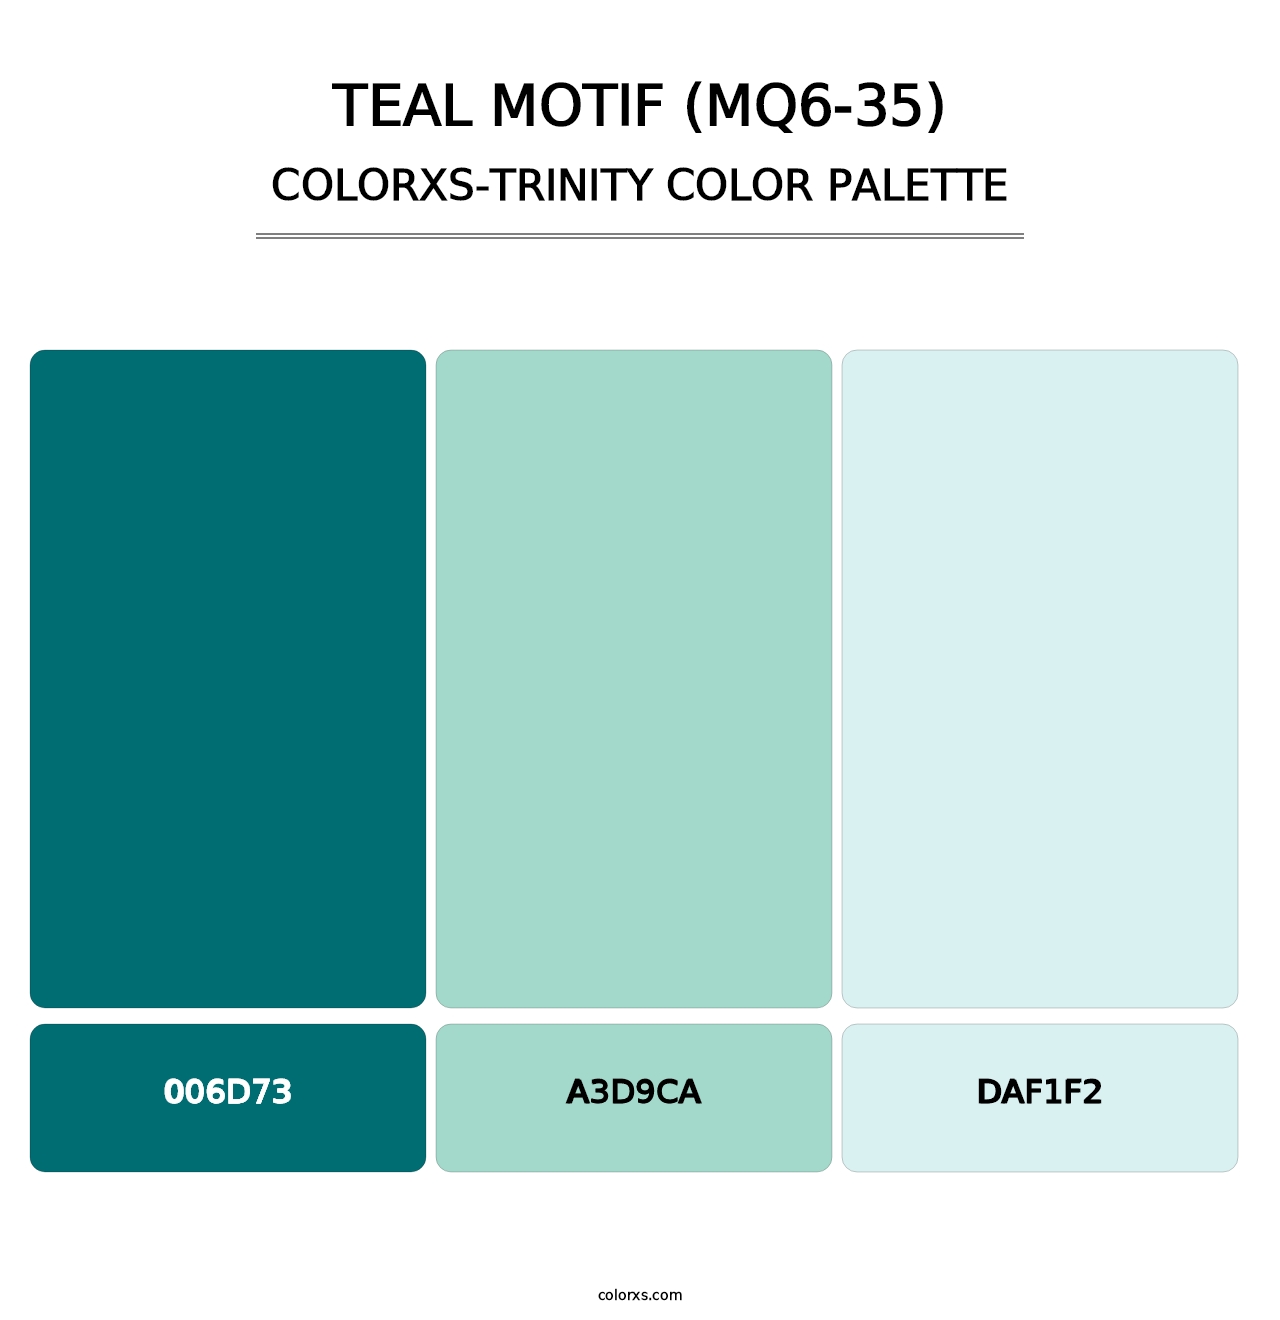 Teal Motif (MQ6-35) - Colorxs Trinity Palette